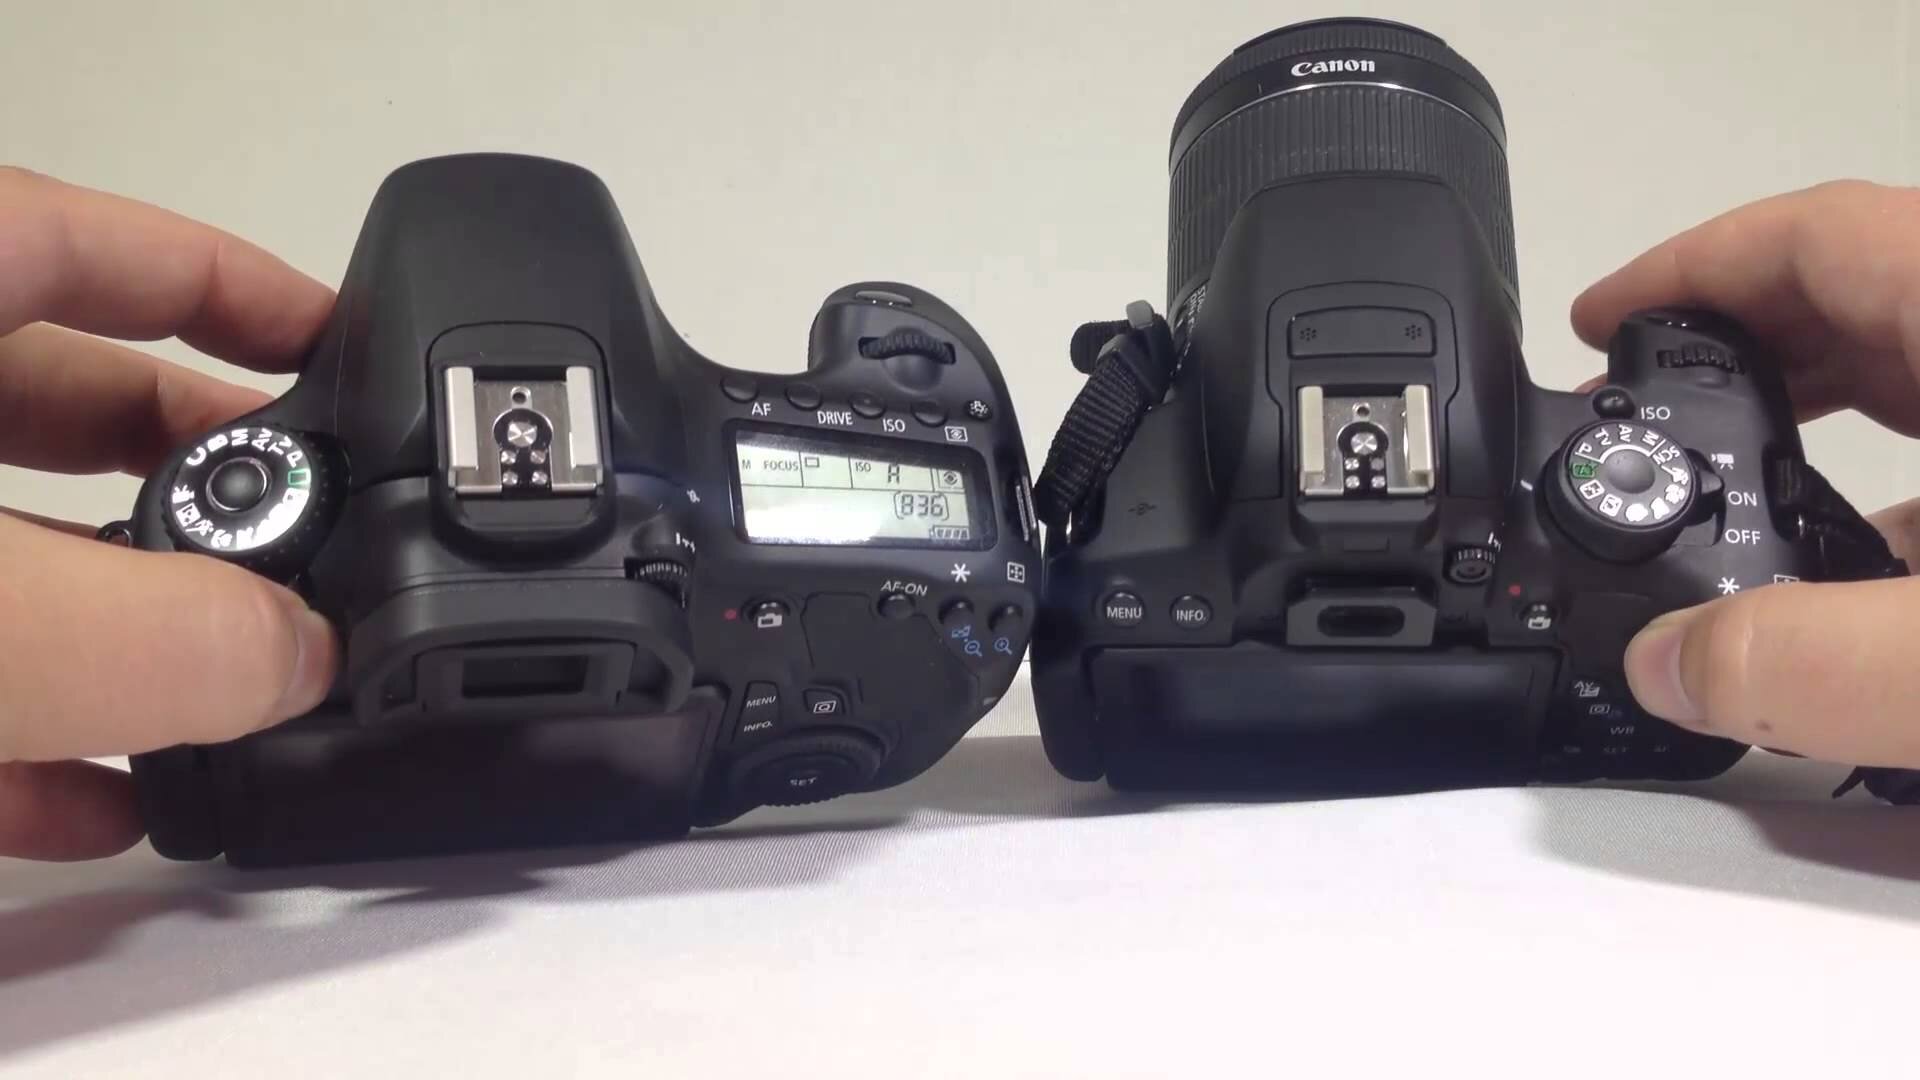 So sánh máy ảnh Canon EOS 7D và Canon EOS 60D